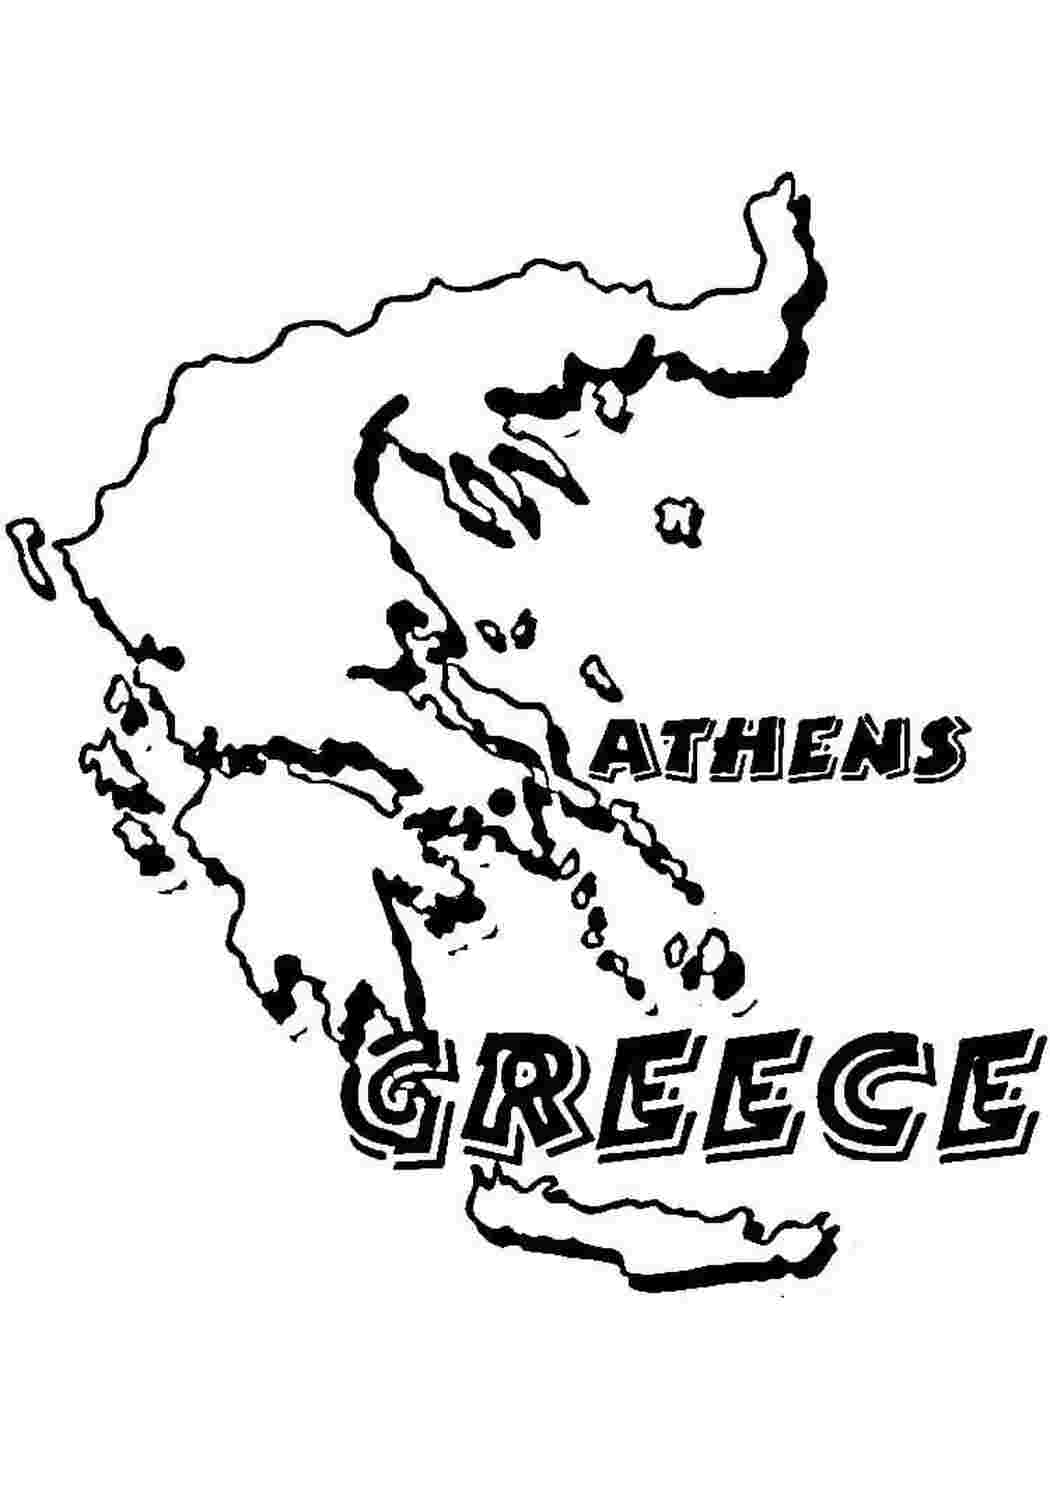 Раскраски картинки на рабочий стол онлайн Карта греции Раскраски для мальчиков